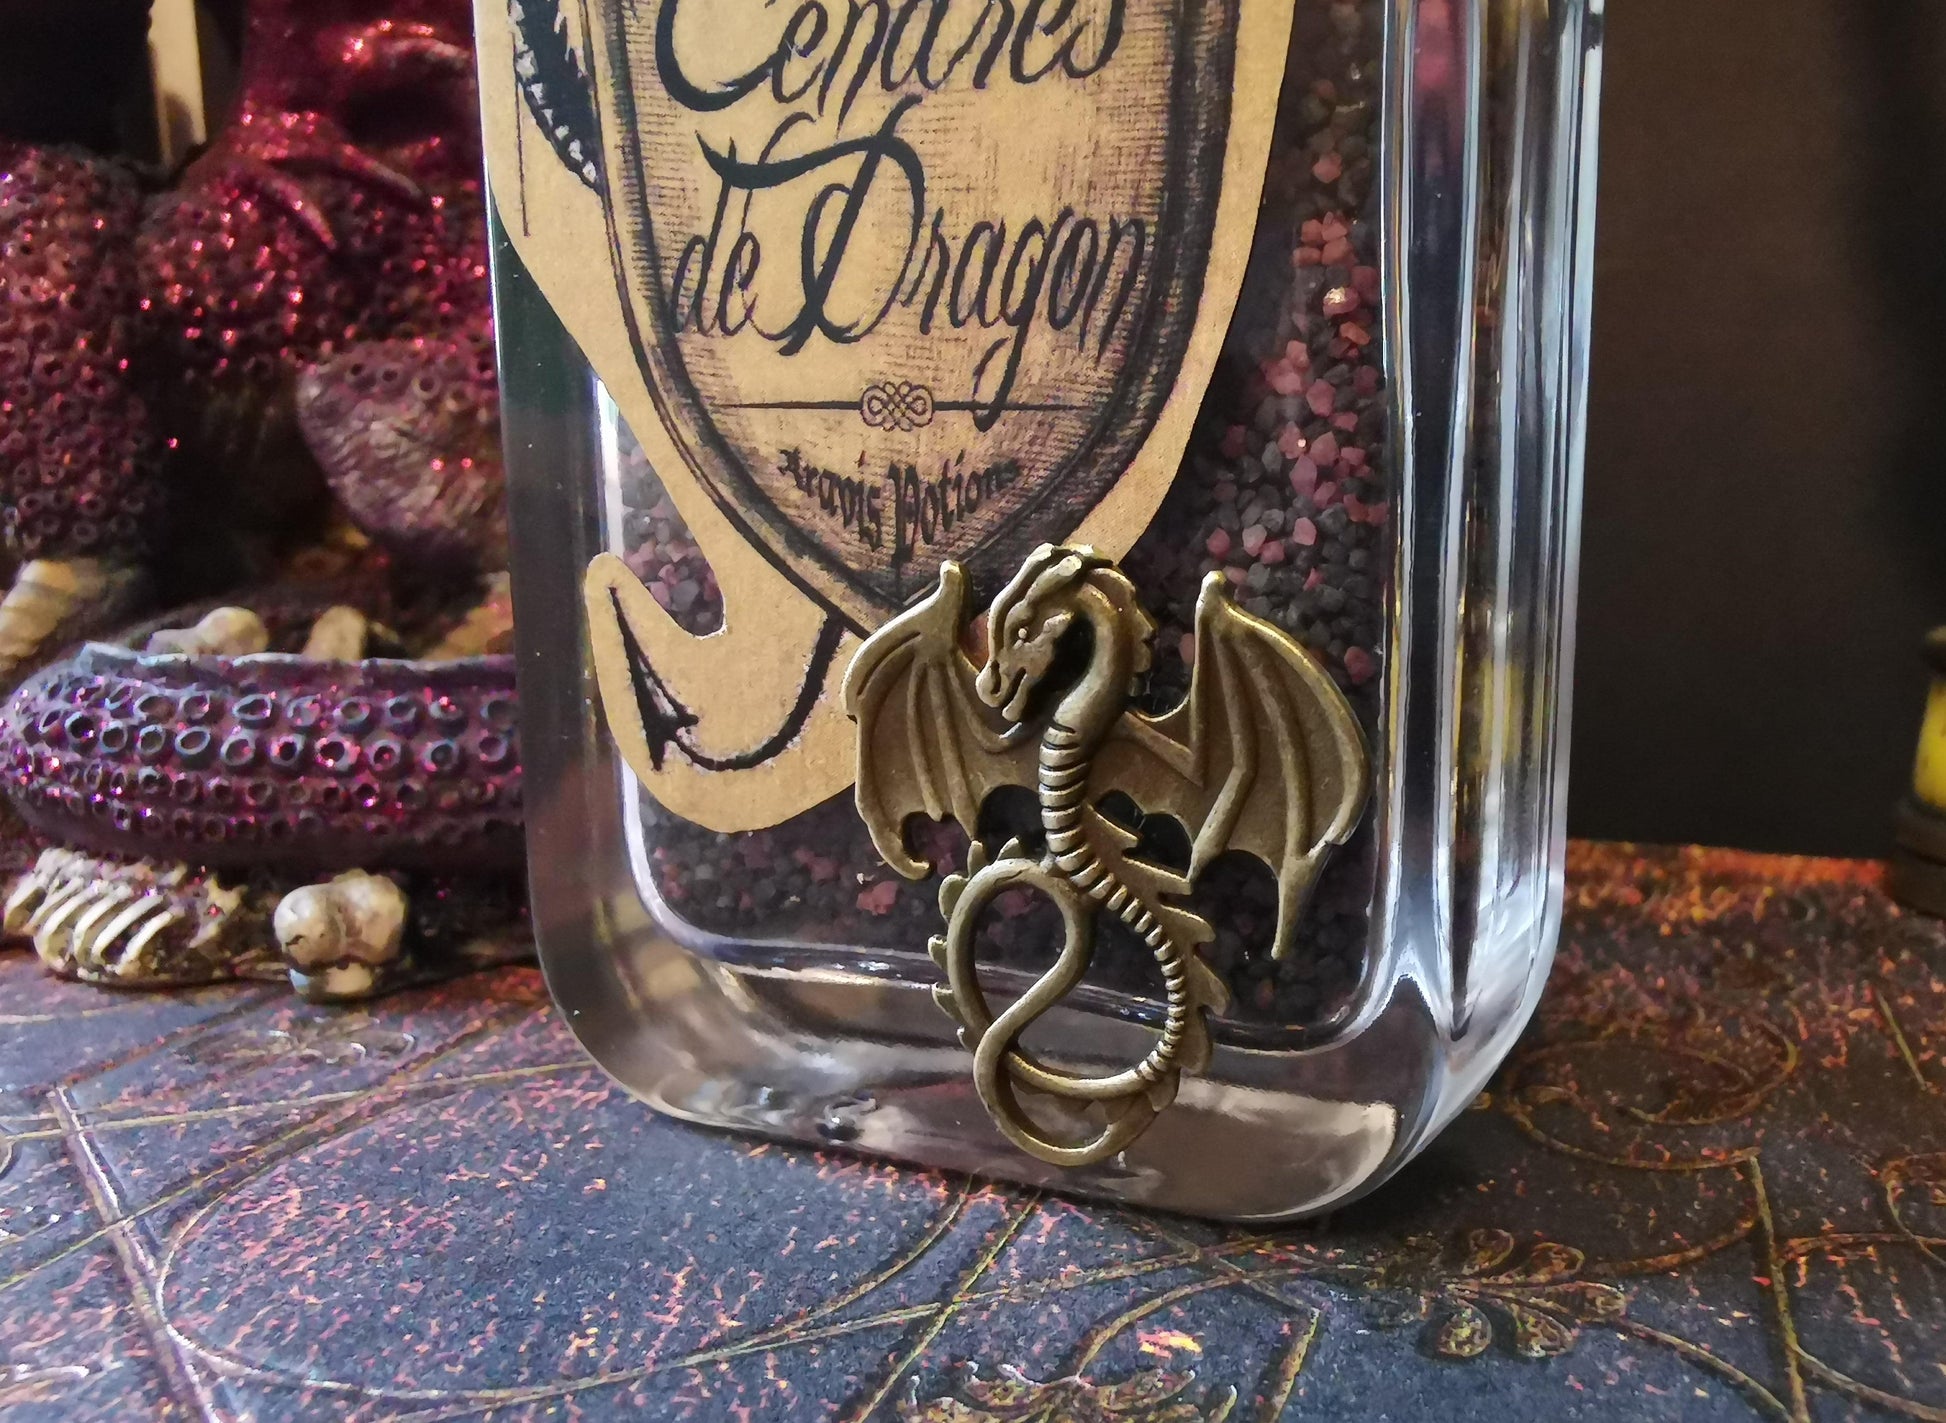 Cendres de Dragon Aravis Potions Apothecary Harry Potter